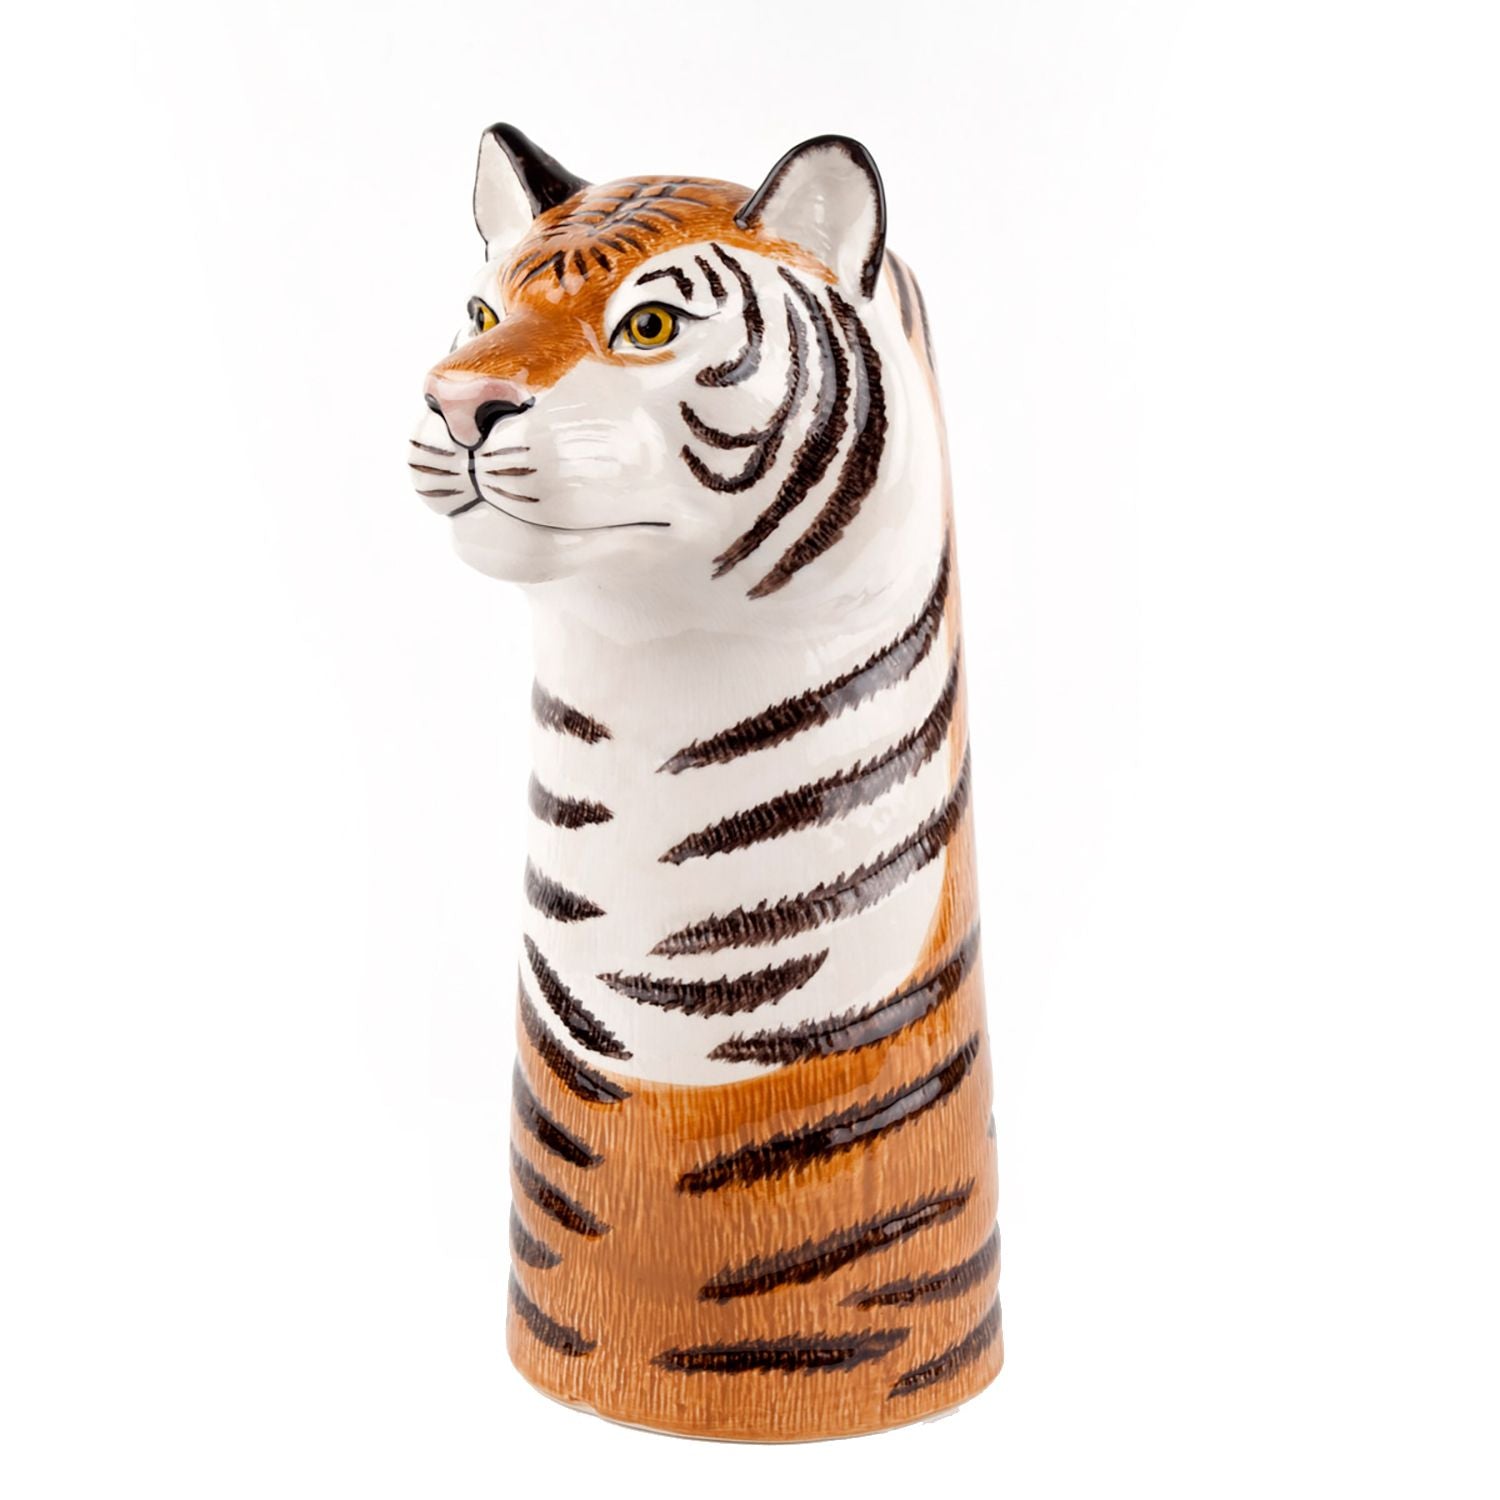 Tiger Flower Vase - Large